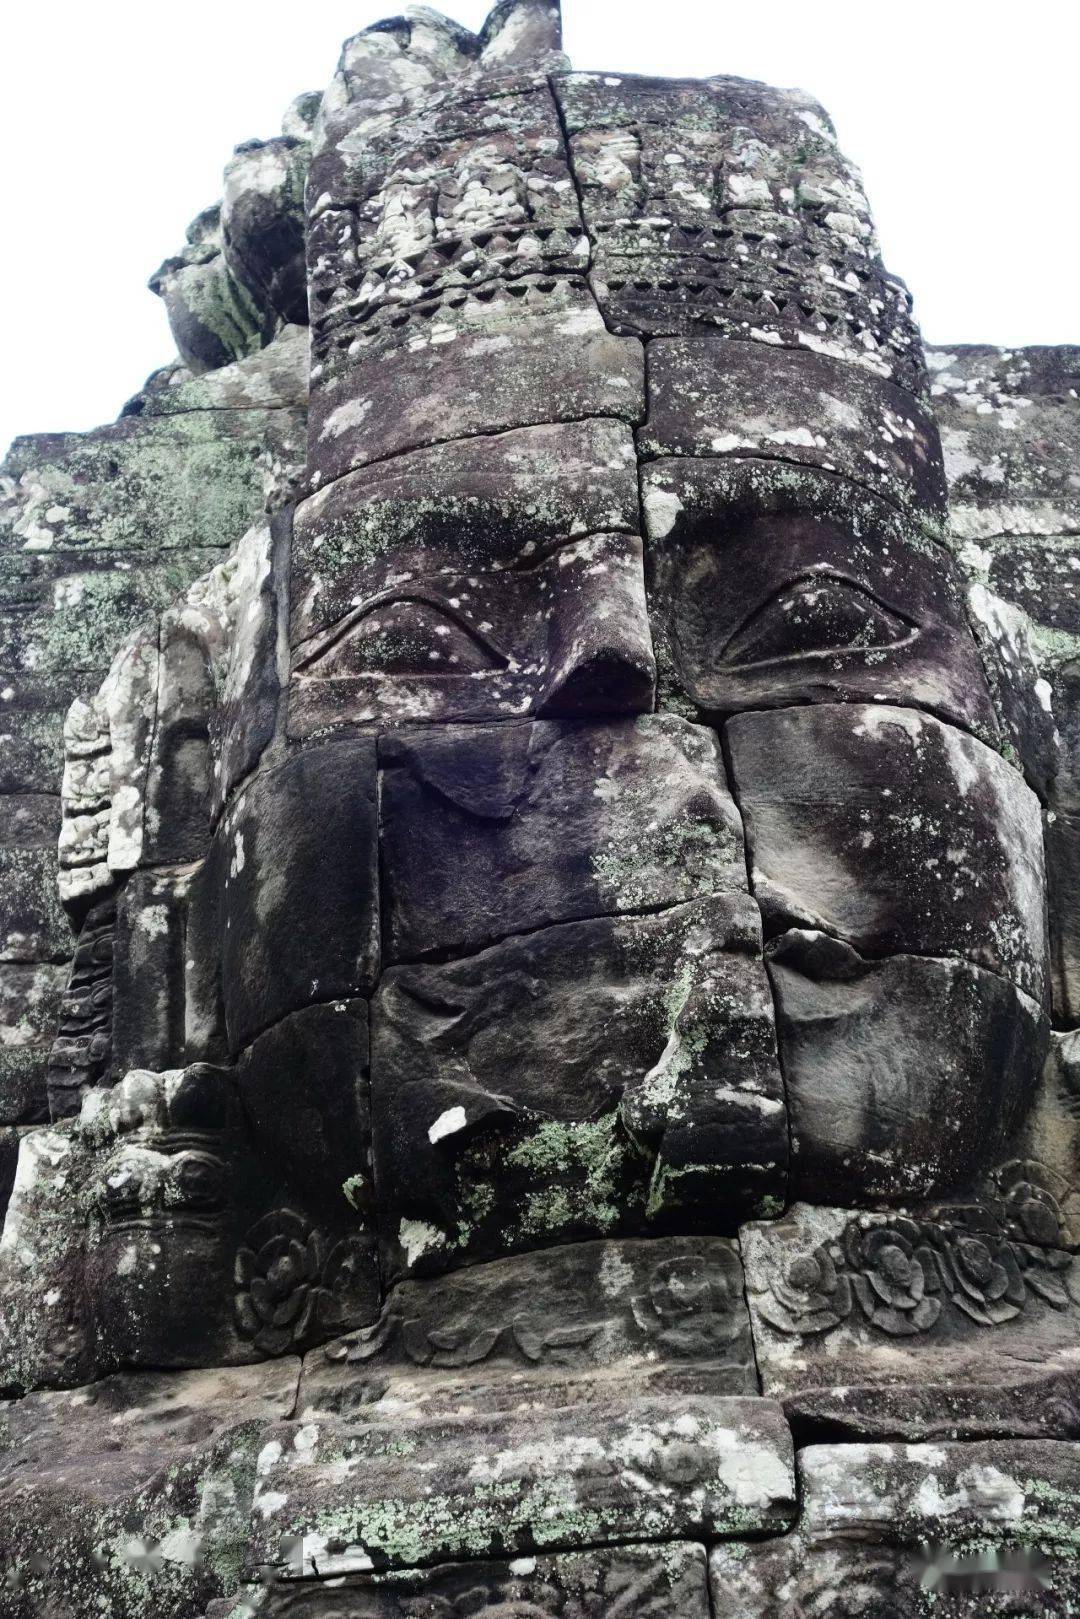 巴戎寺 高棉的微笑图片